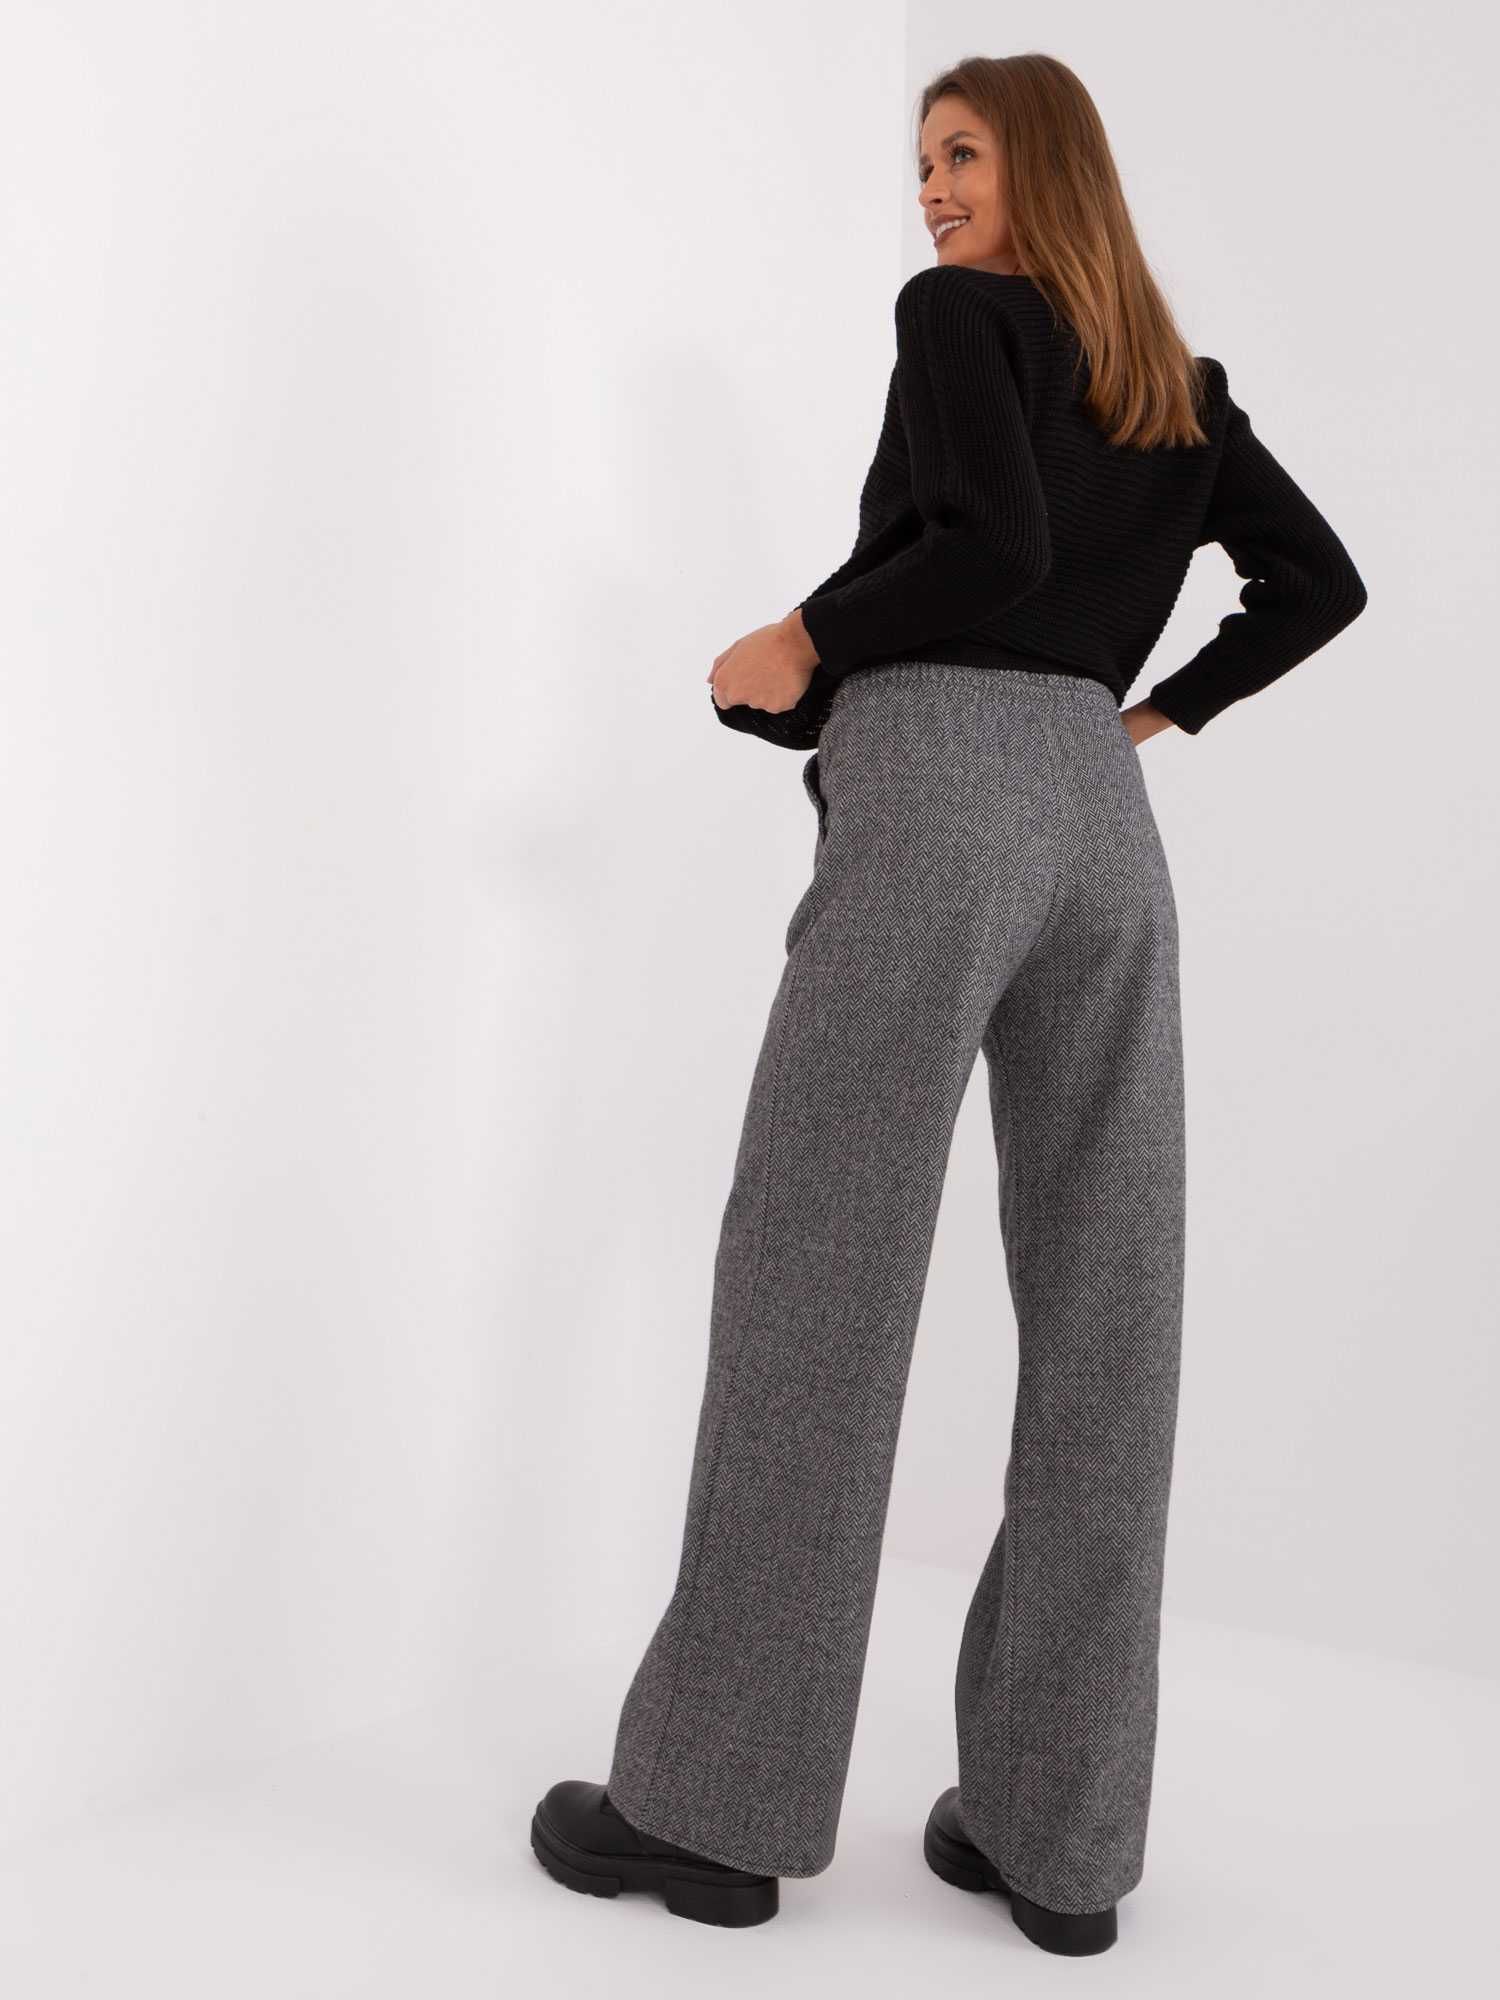 SZARE dzianinowe spodnie damskie W JODEŁKĘ wiązanie w pasie S/M L/XL